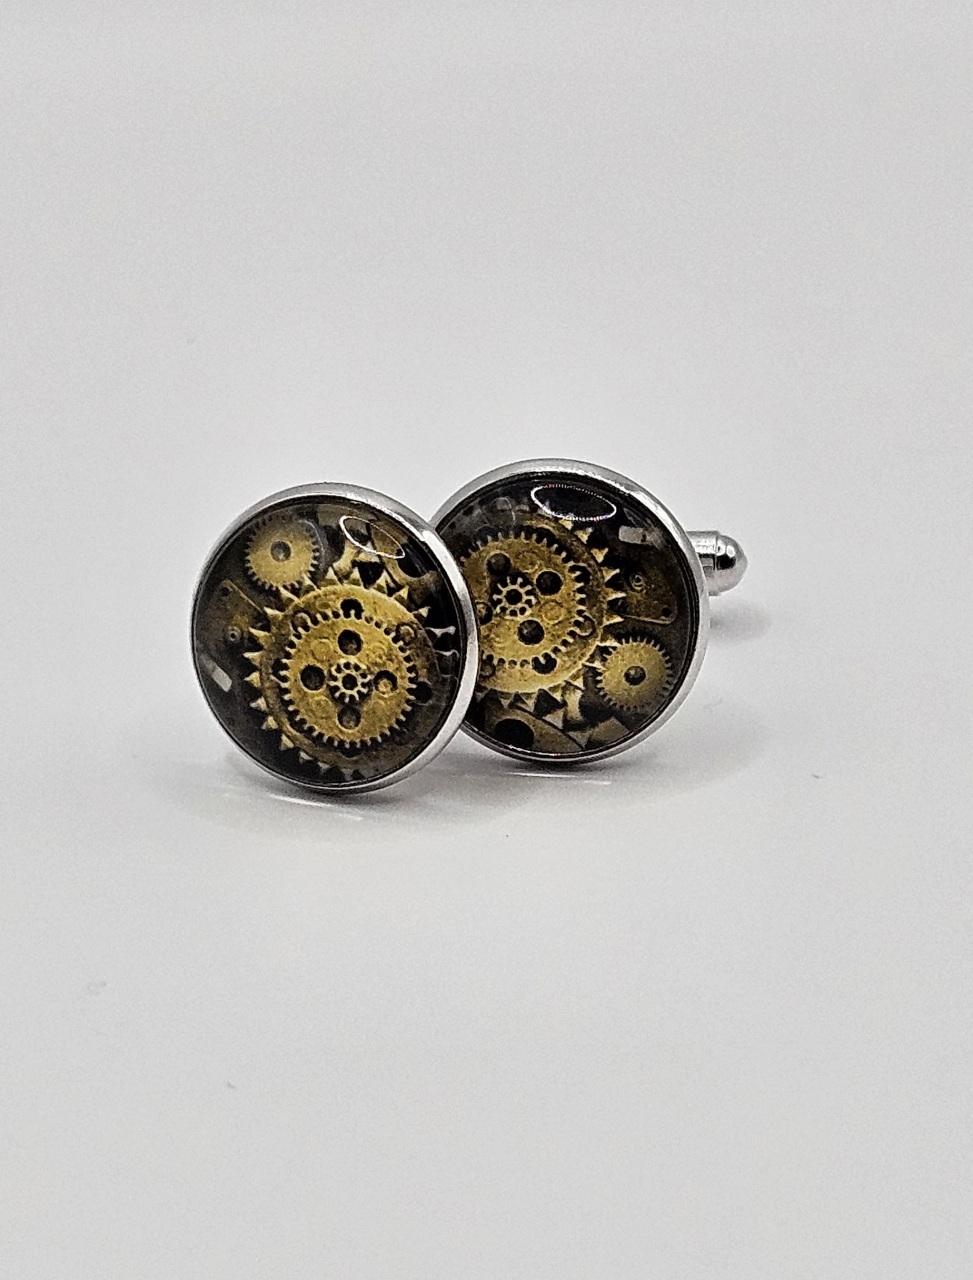 Stijlvolle manchetknopen met tandwiel ontwerp voor een steampunk look